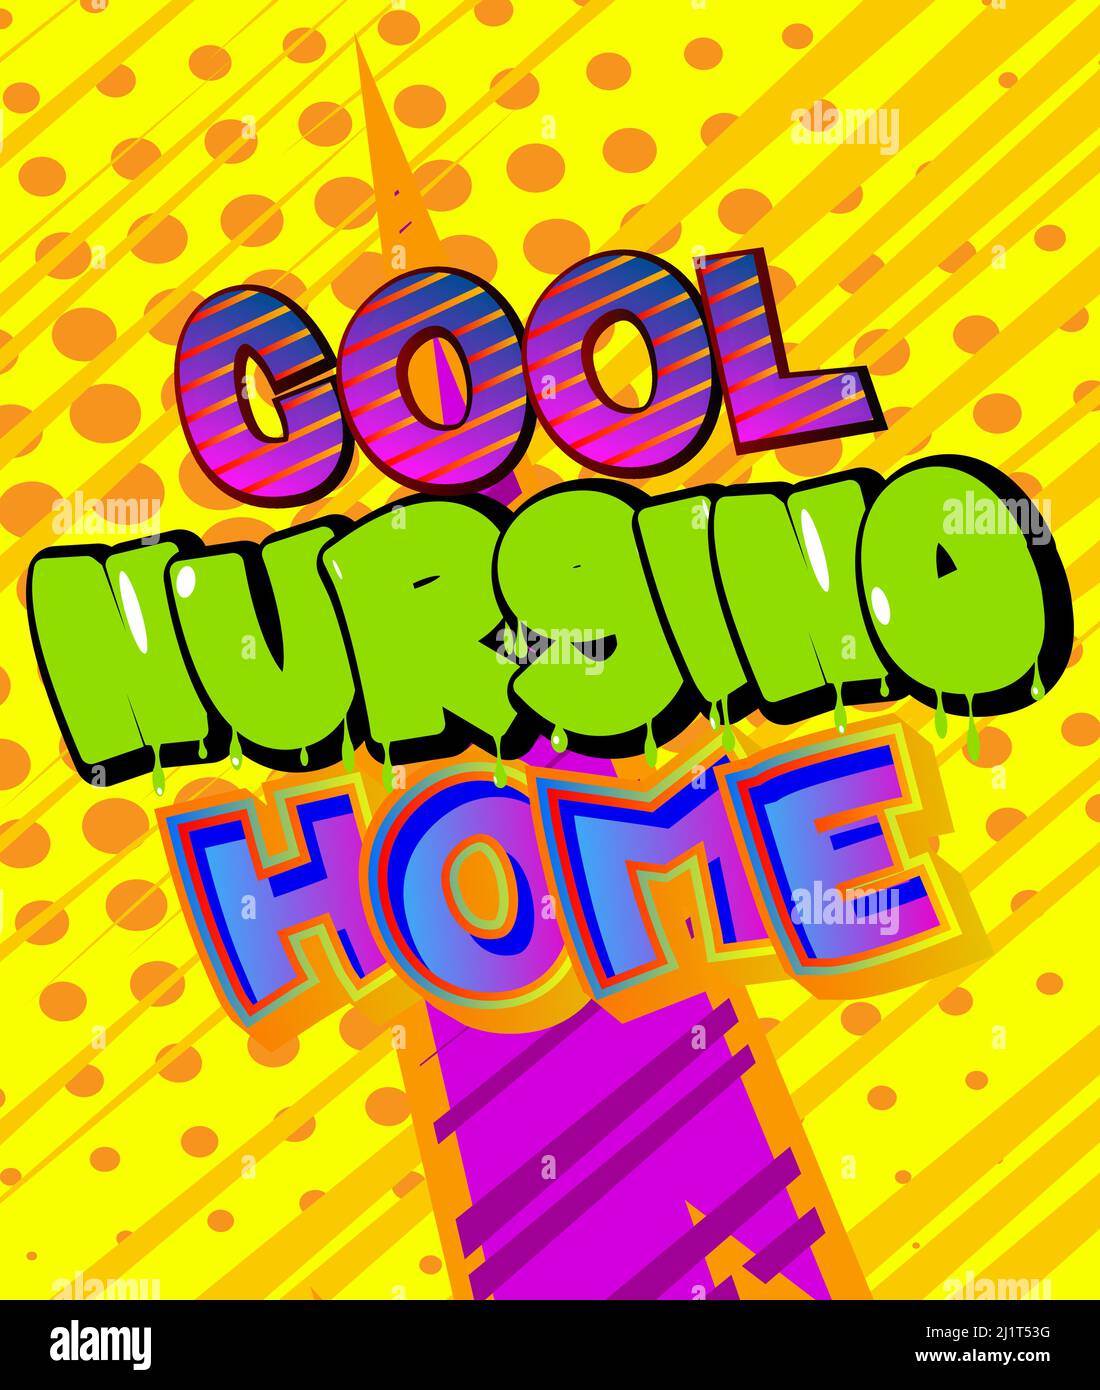 Home Cool Nursing. Testo della parola del fumetto su sfondo di fumetti astratti. Illustrazione in stile retrò pop art. Illustrazione Vettoriale